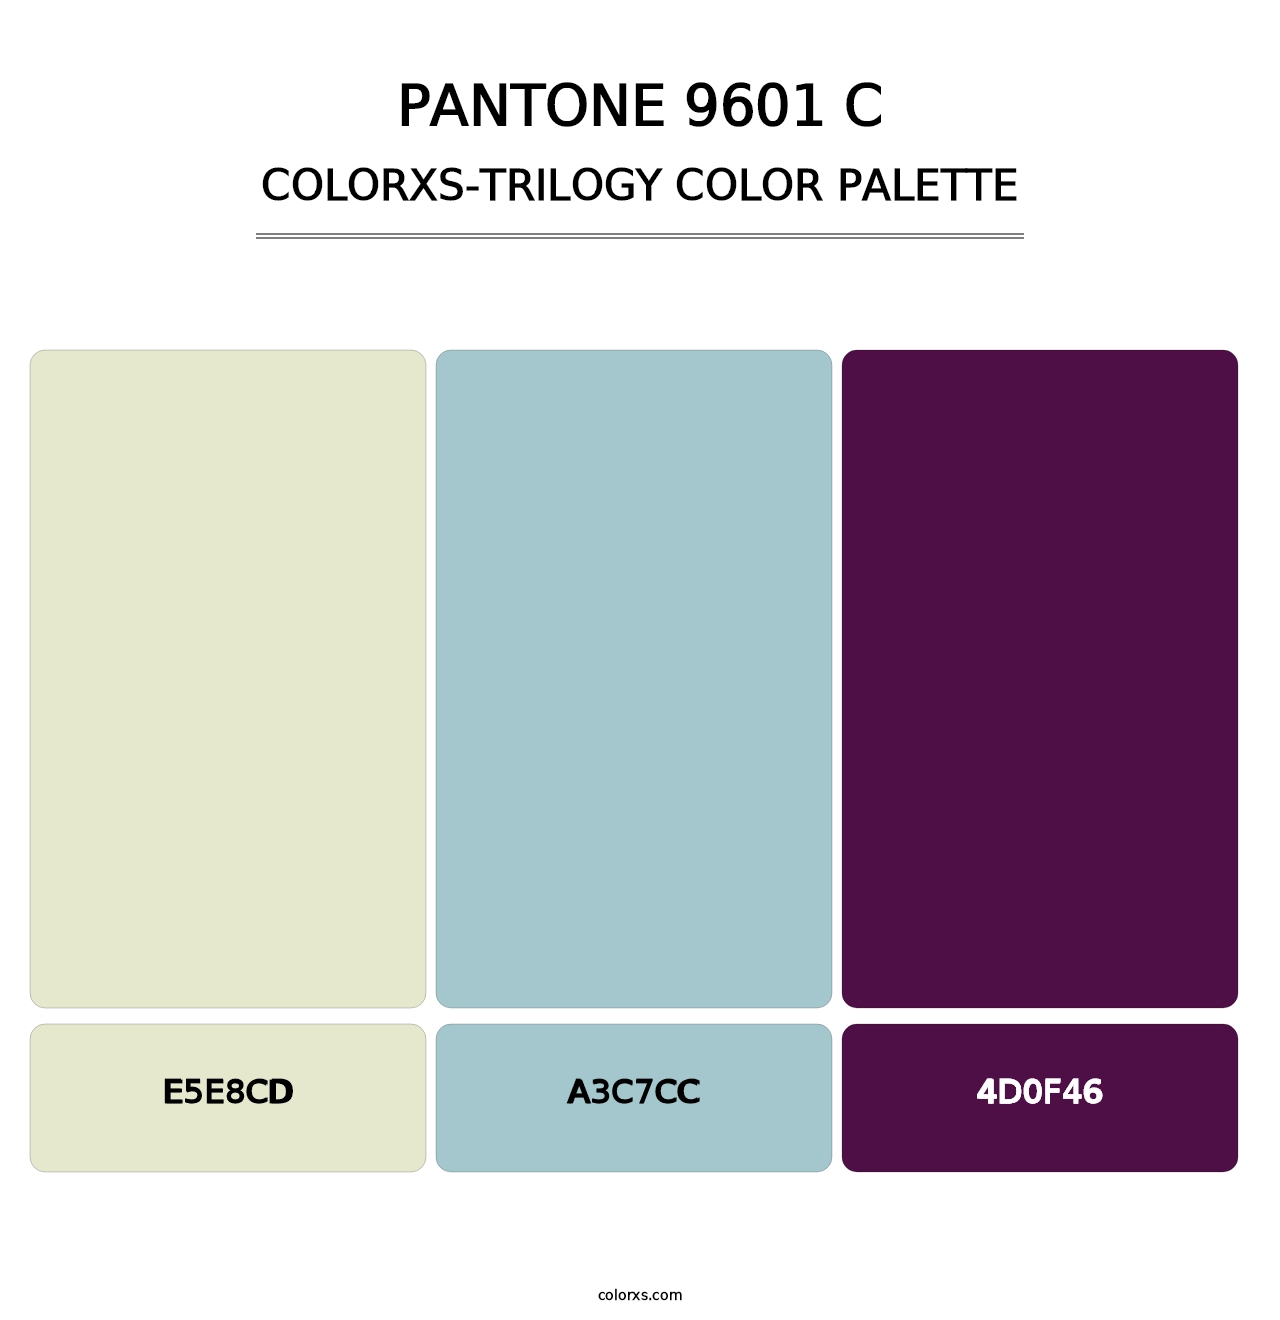 PANTONE 9601 C - Colorxs Trilogy Palette